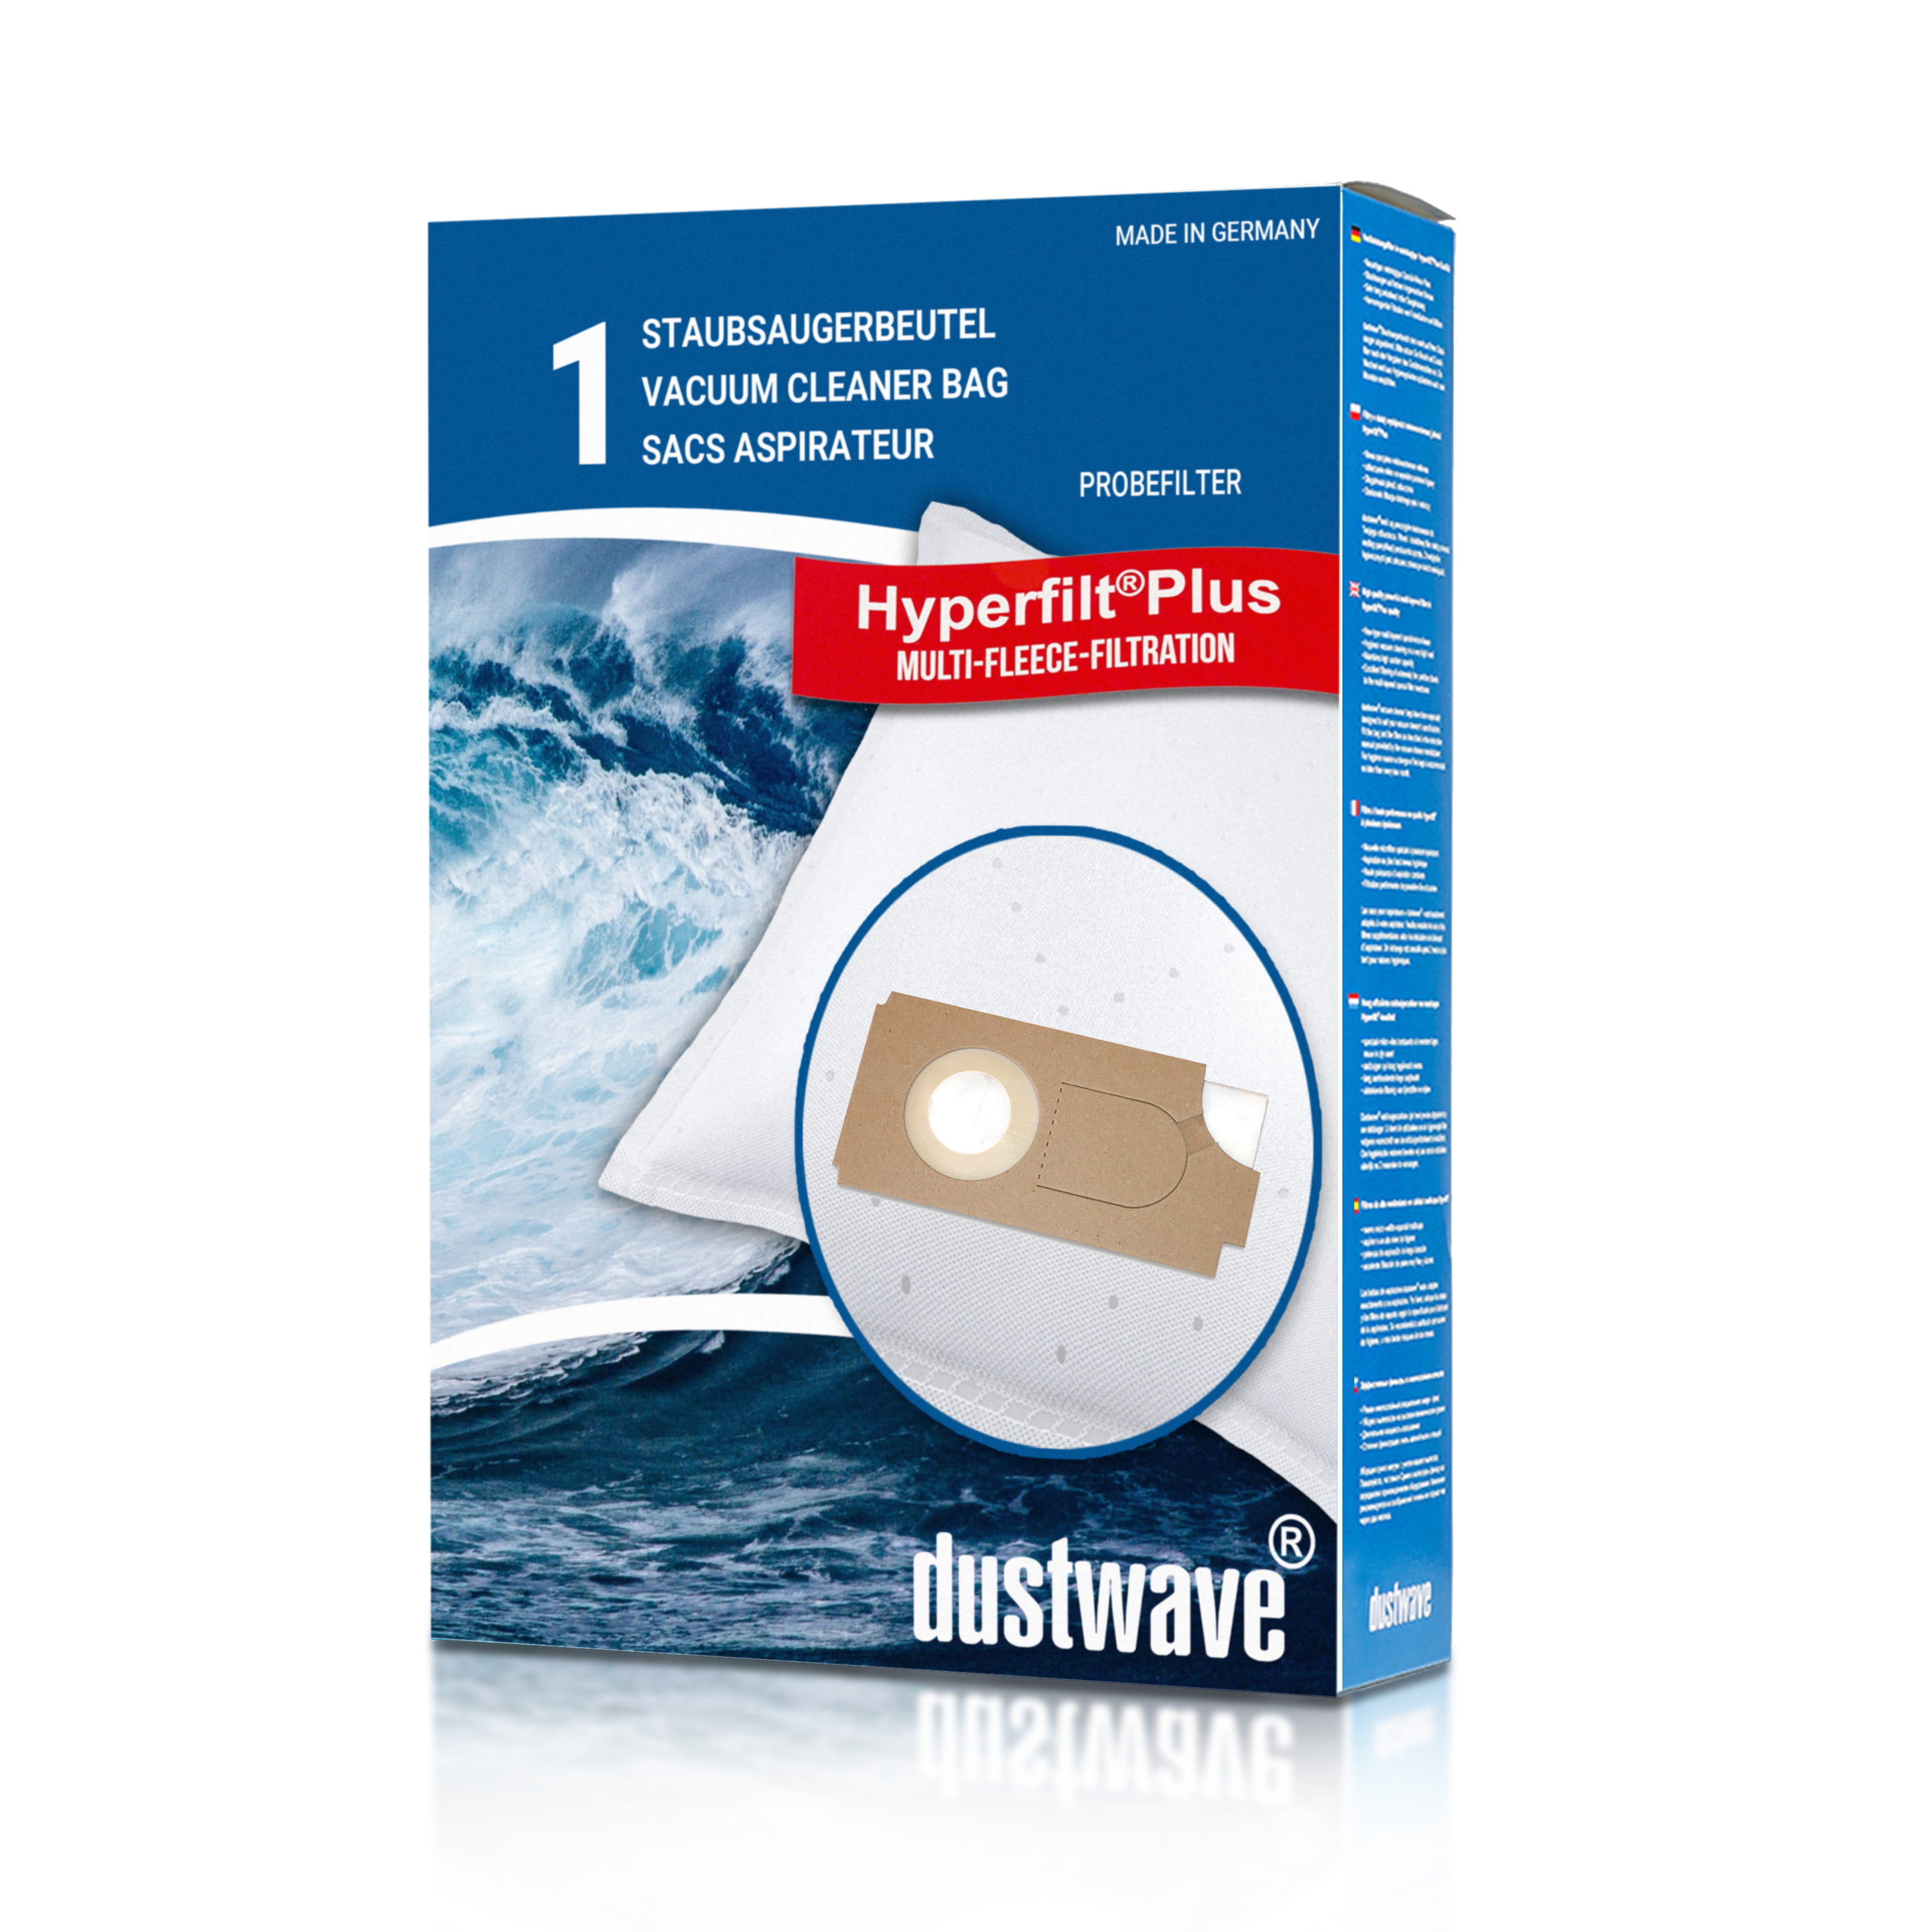 Dustwave® 1 Staubsaugerbeutel für Columbus 26 - hocheffizient mit Hygieneverschluss - Made in Germany